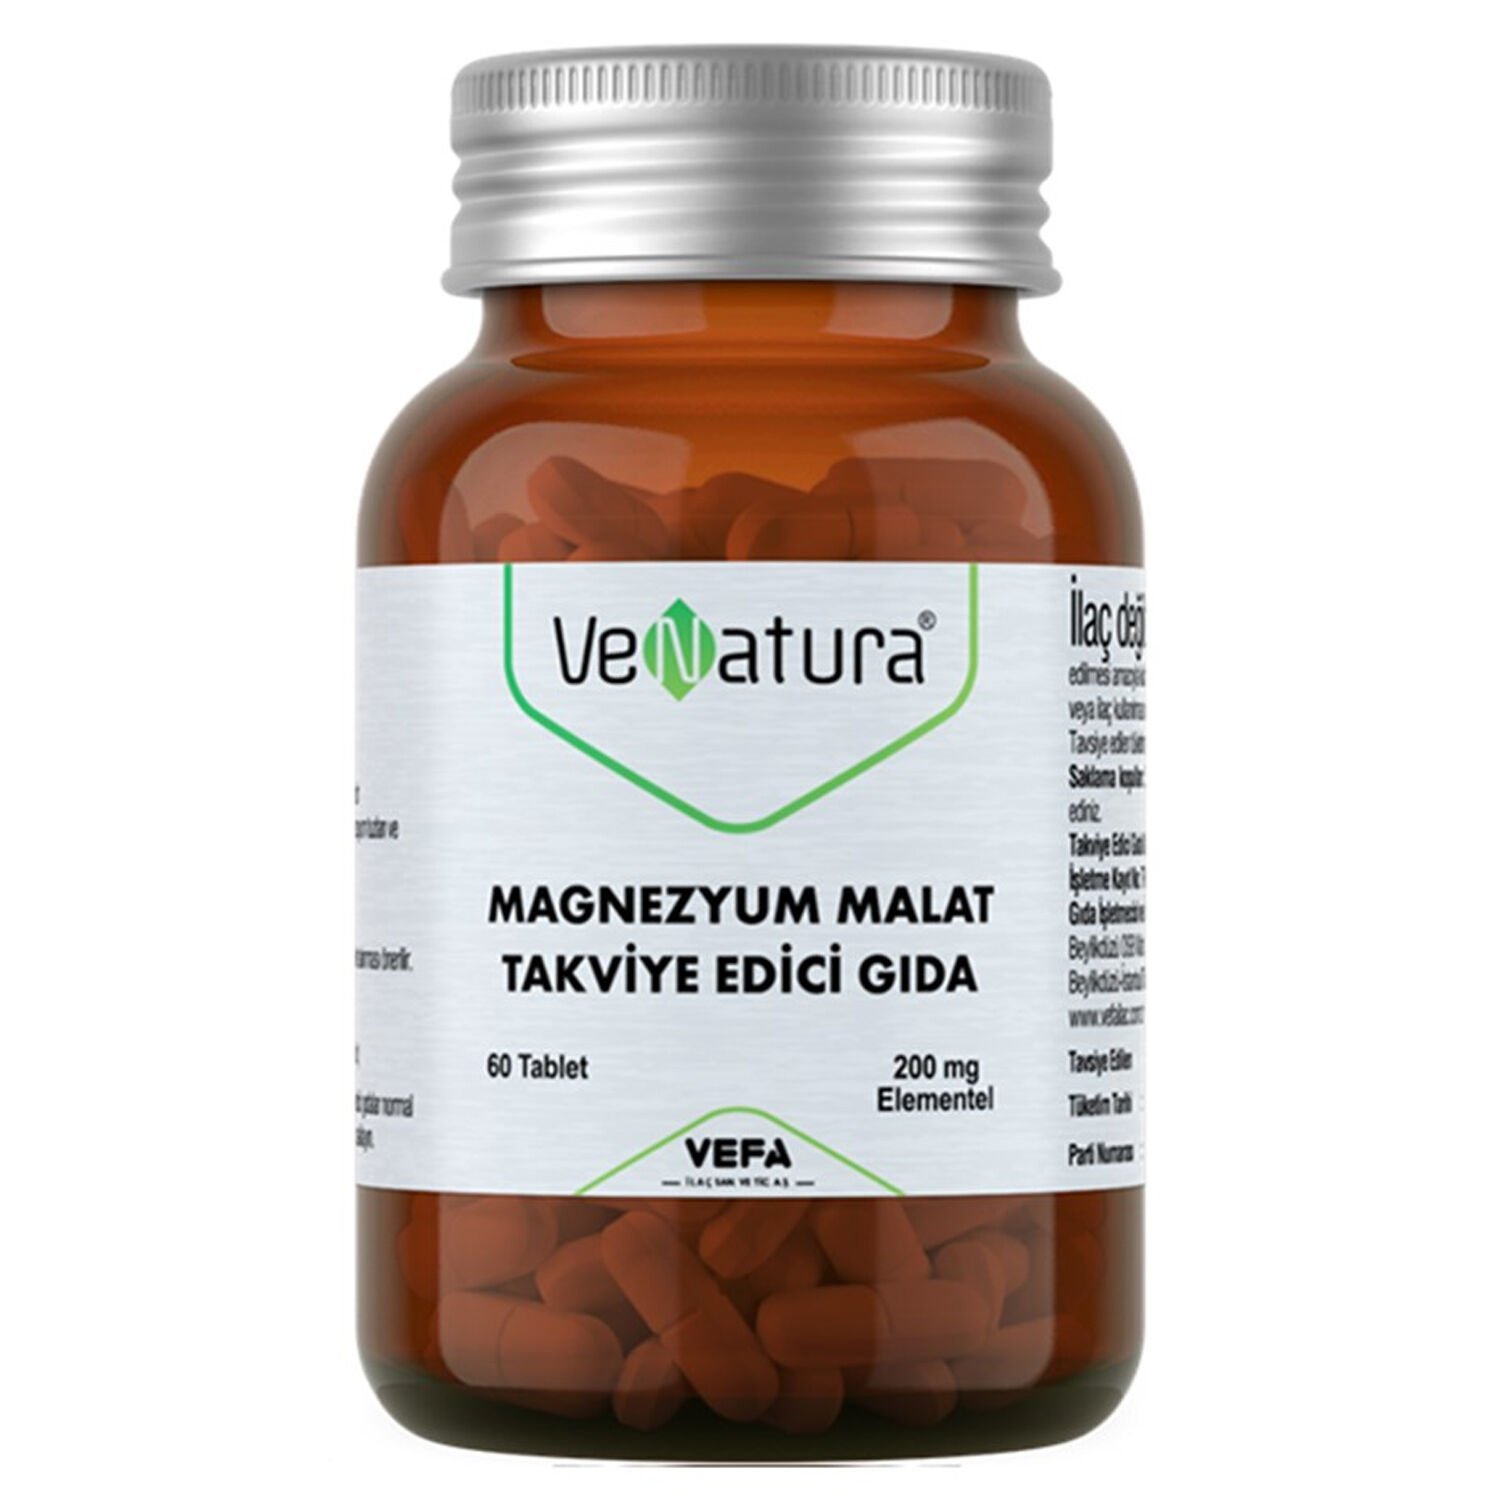 Venatura Magnezyum Malat Takviye Edici Gıda 60 Tablet